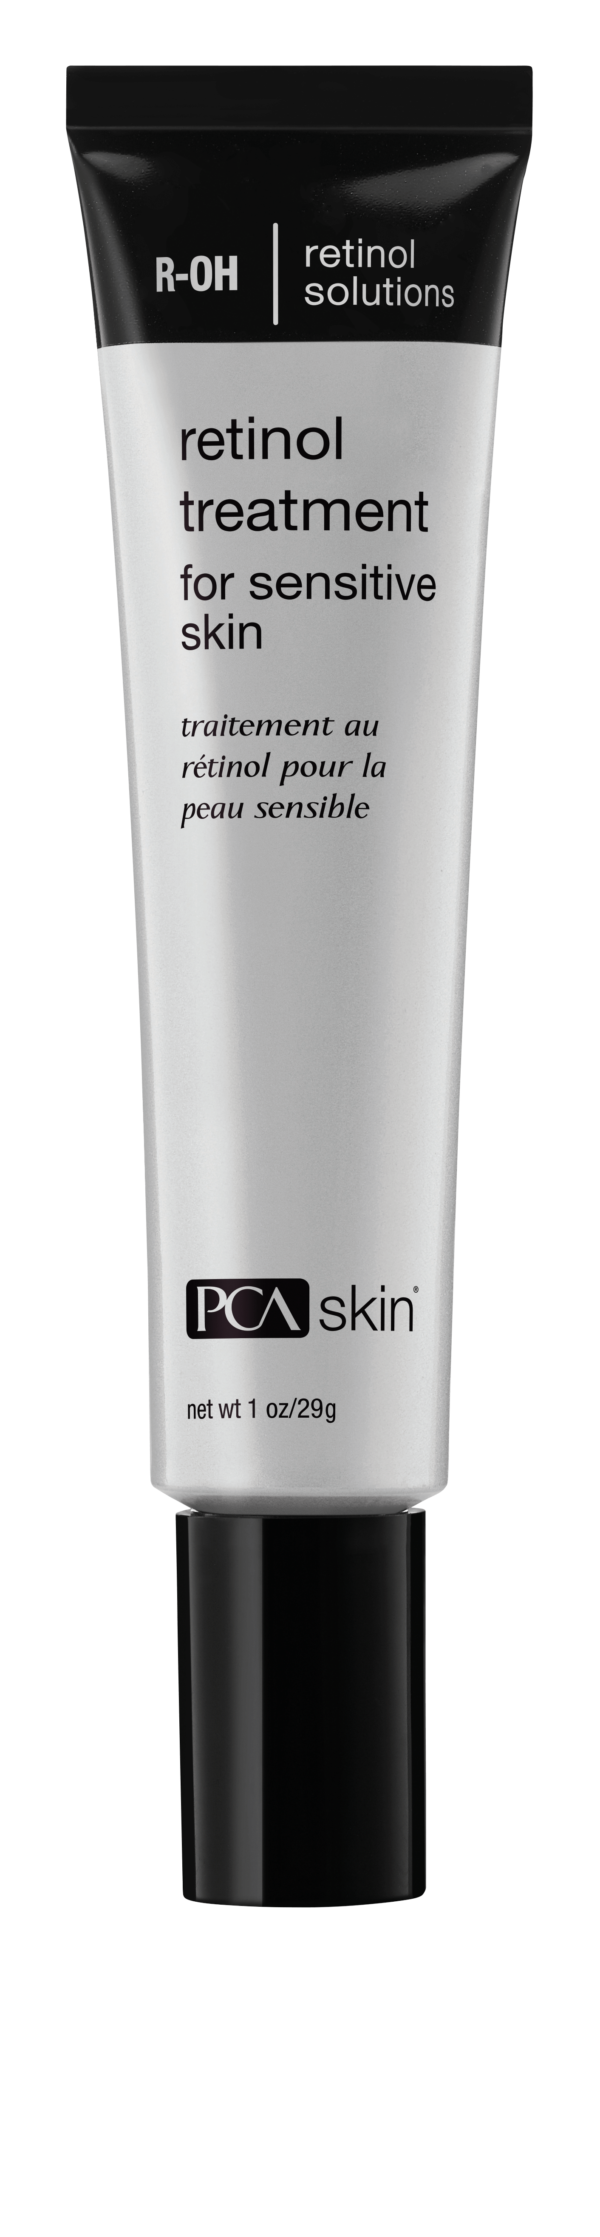 PCA_Skin_Retinol_Treatment_for_Sensitive_Skin